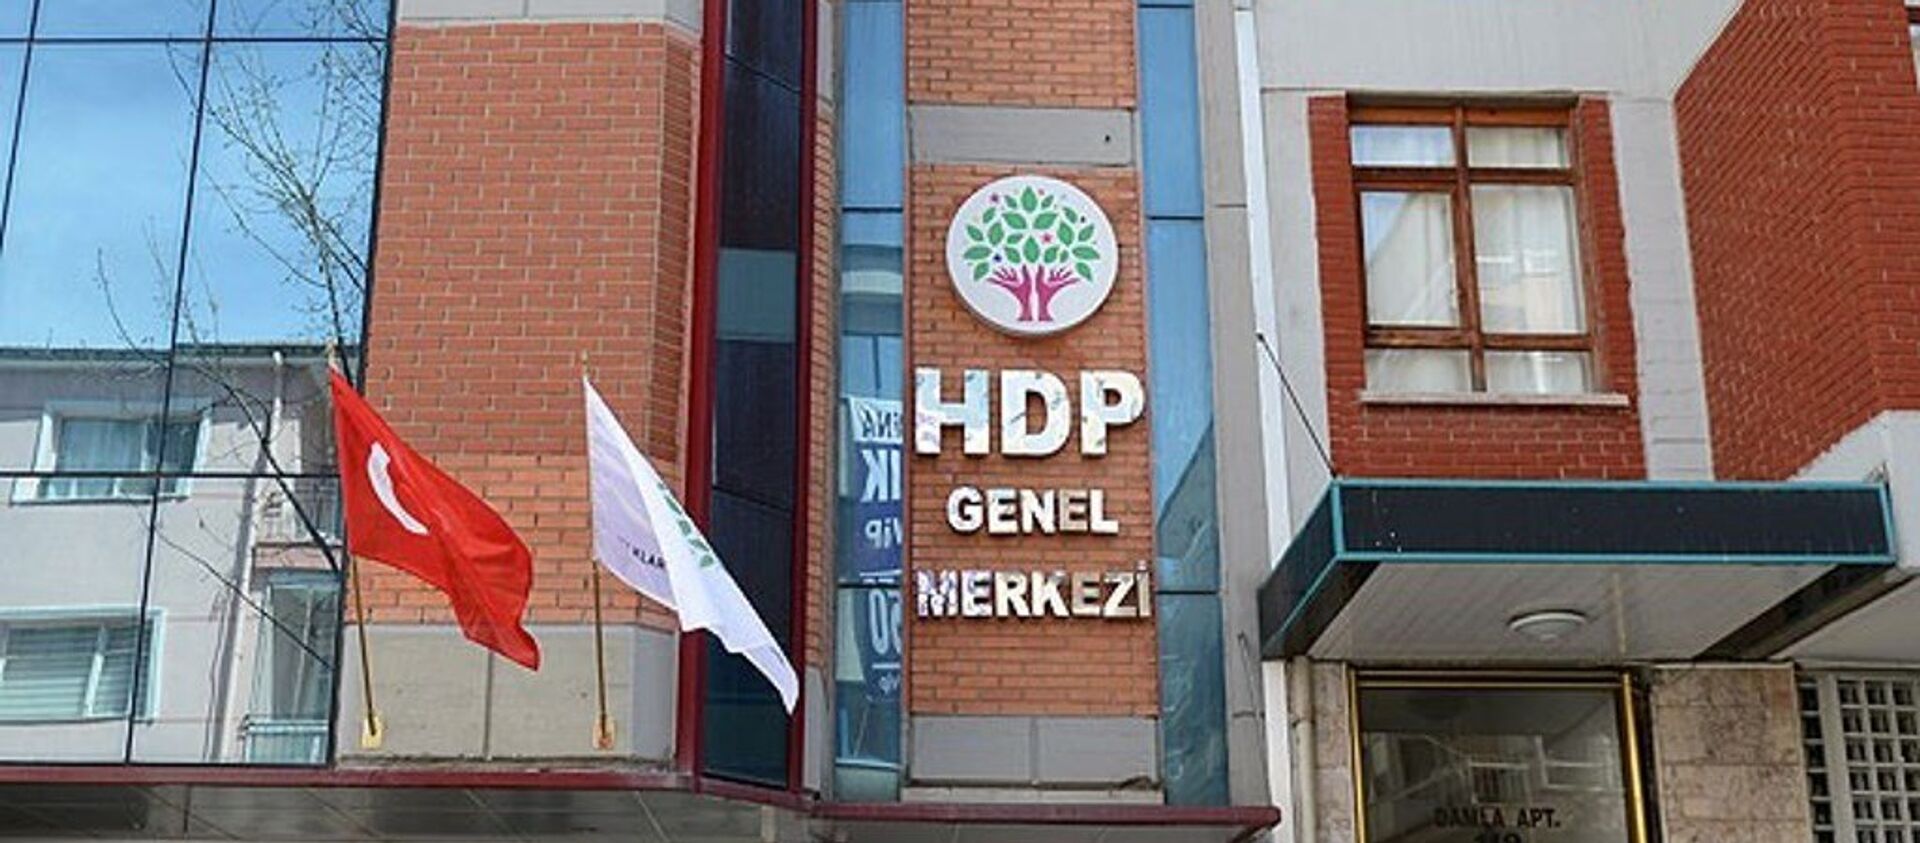 HDP - Sputnik Türkiye, 1920, 17.03.2021